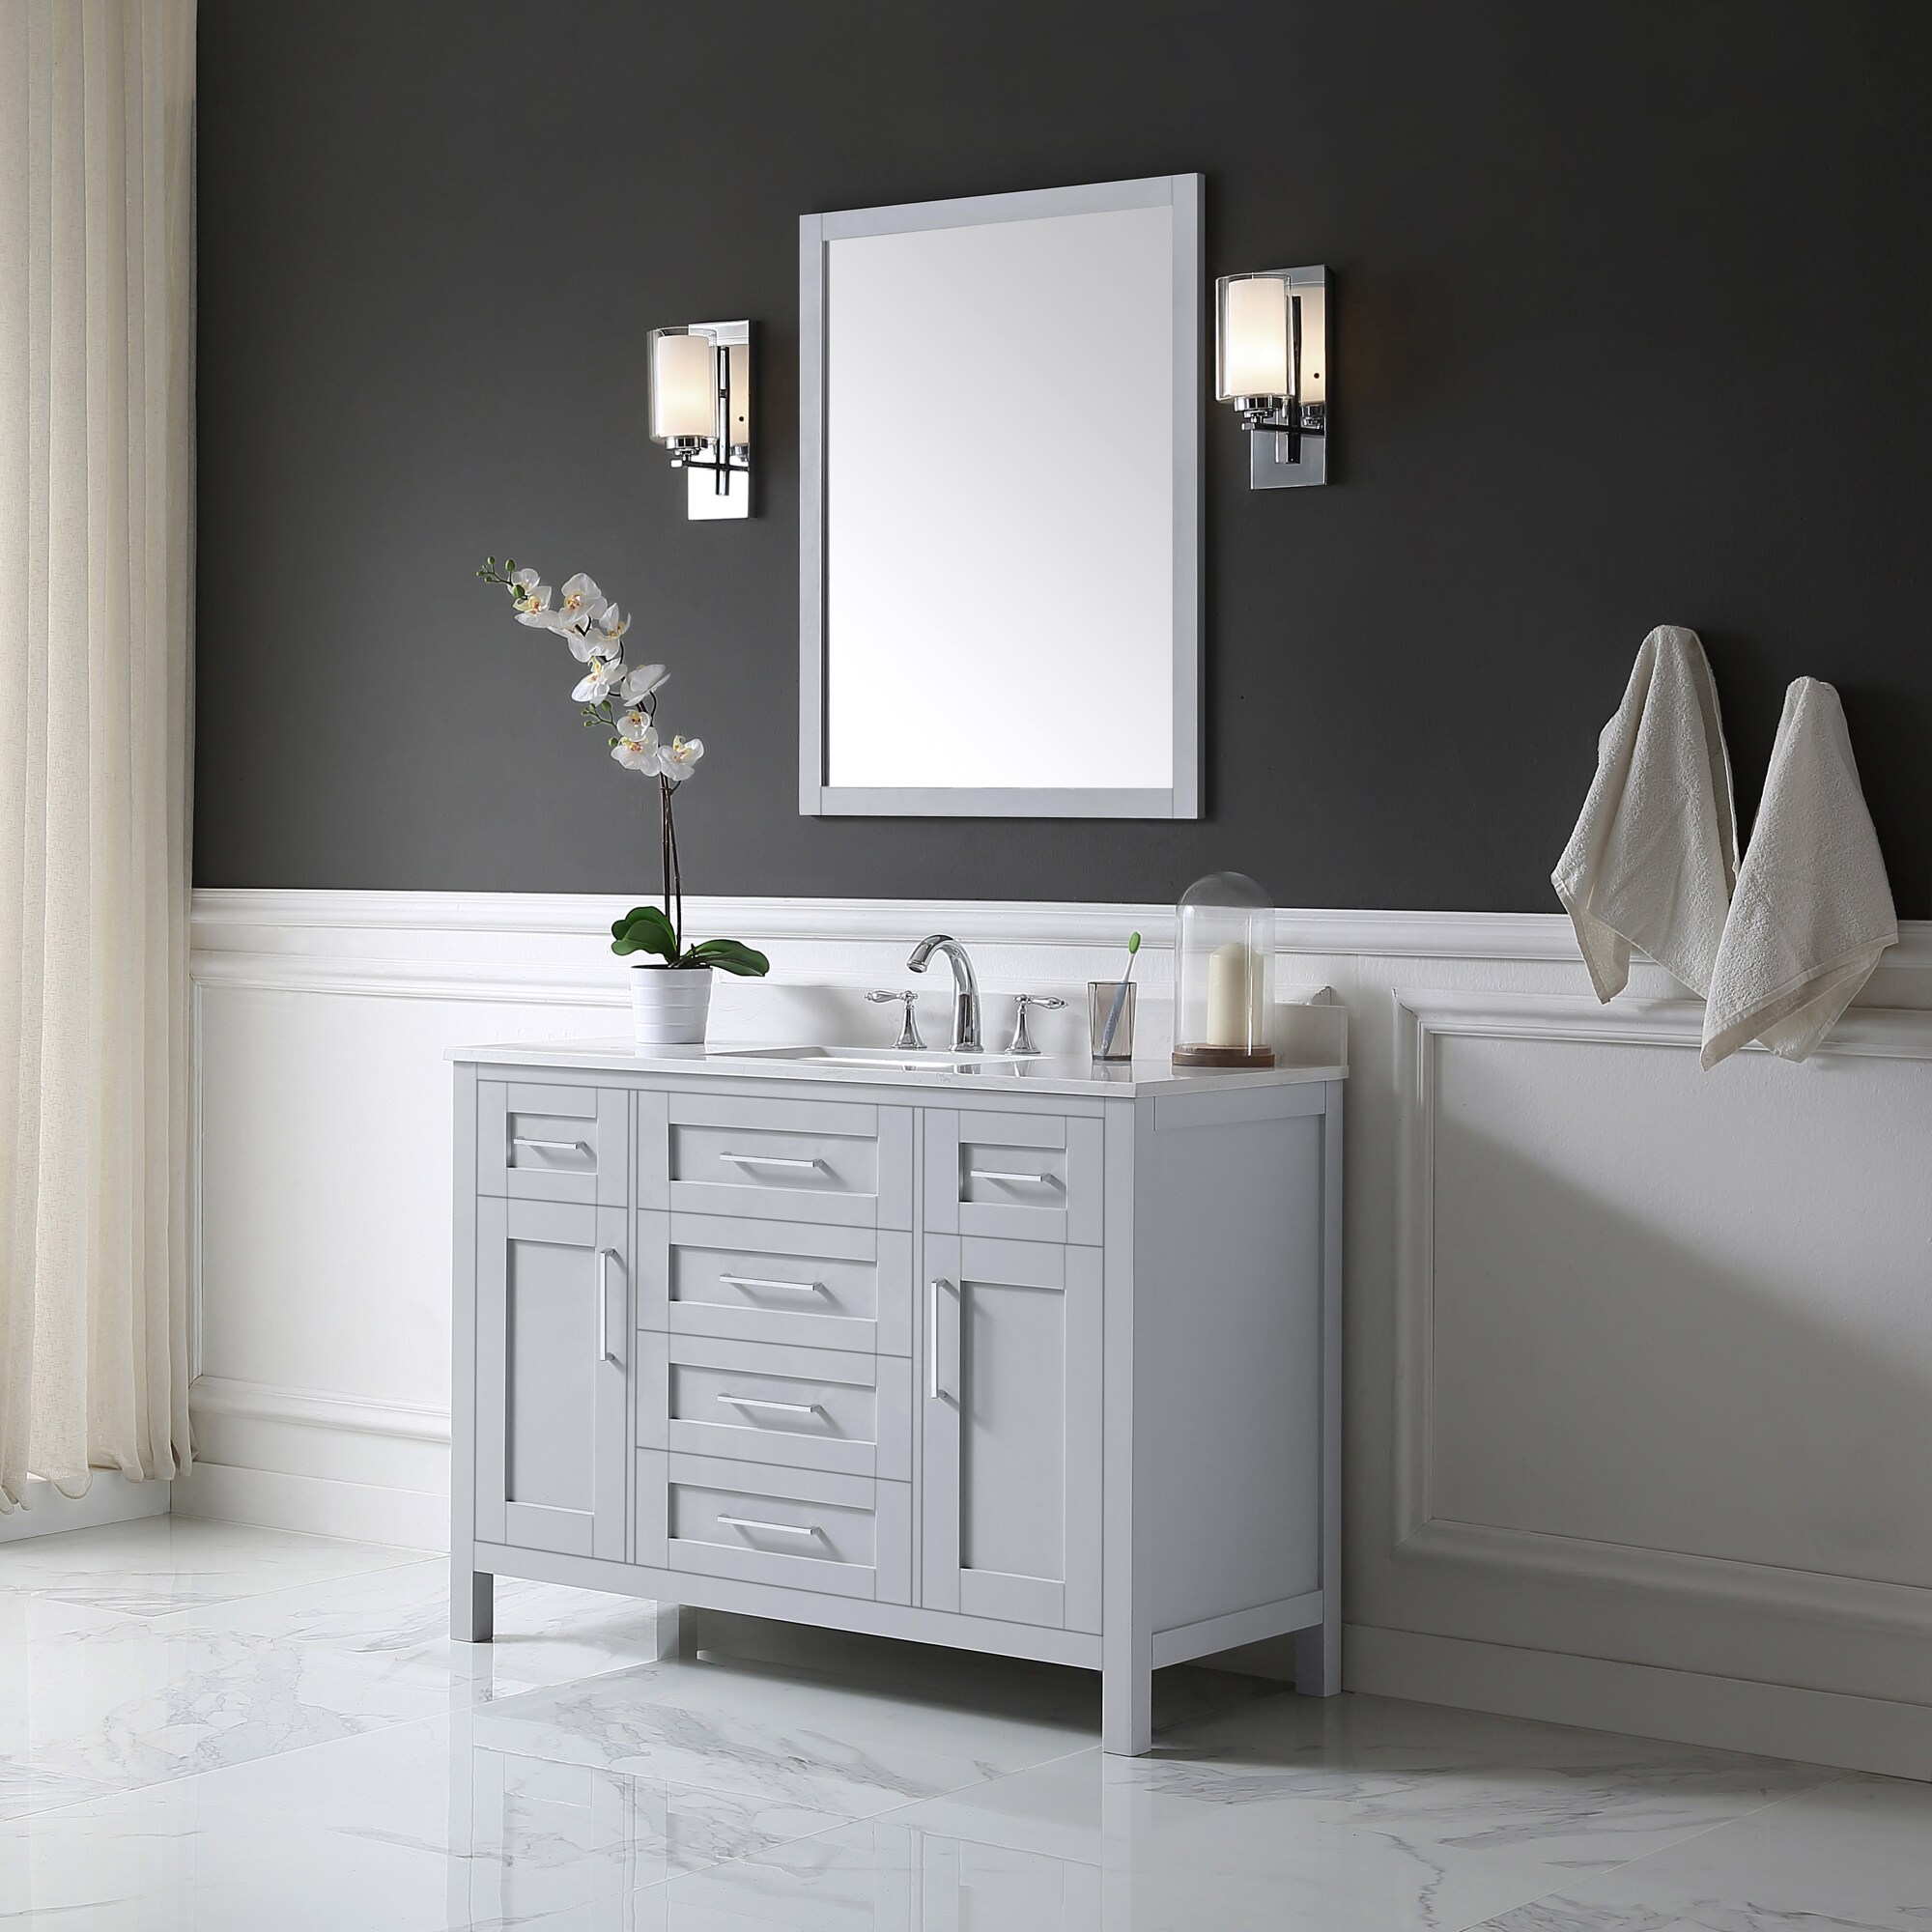 OVE Decors Tahoe 28-in W x 36-in H Dove Gray Rectangular Framed Bathroom Vanity Mirror